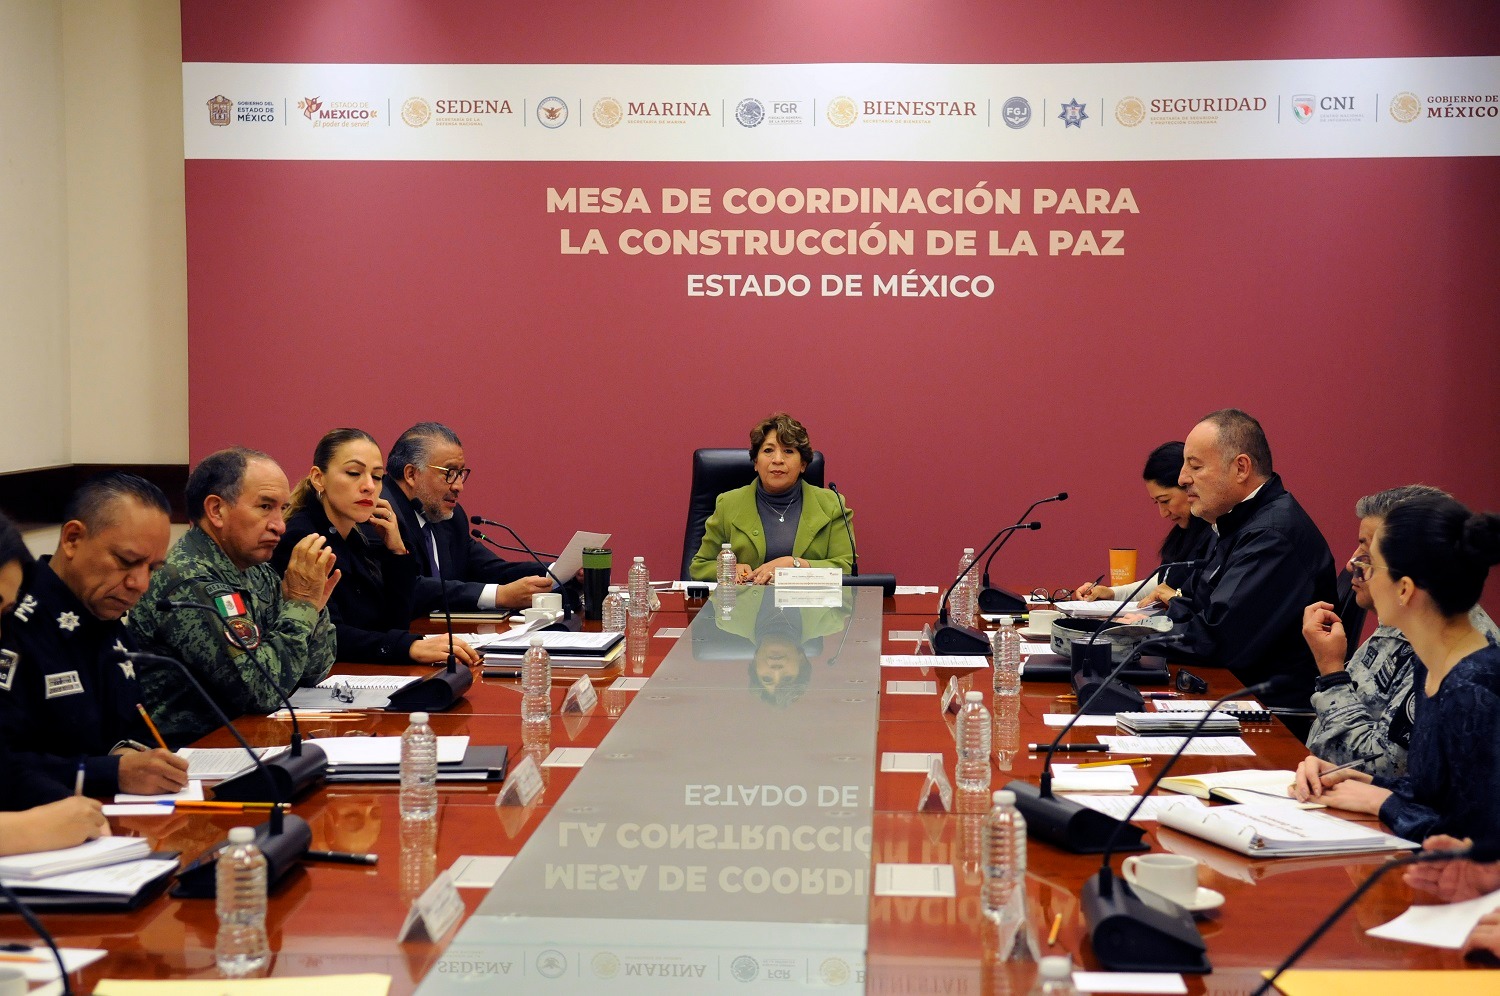 Instruye gobernadora Delfina Gómez a reforzar acciones para erradicar violencia de género en el estado de México